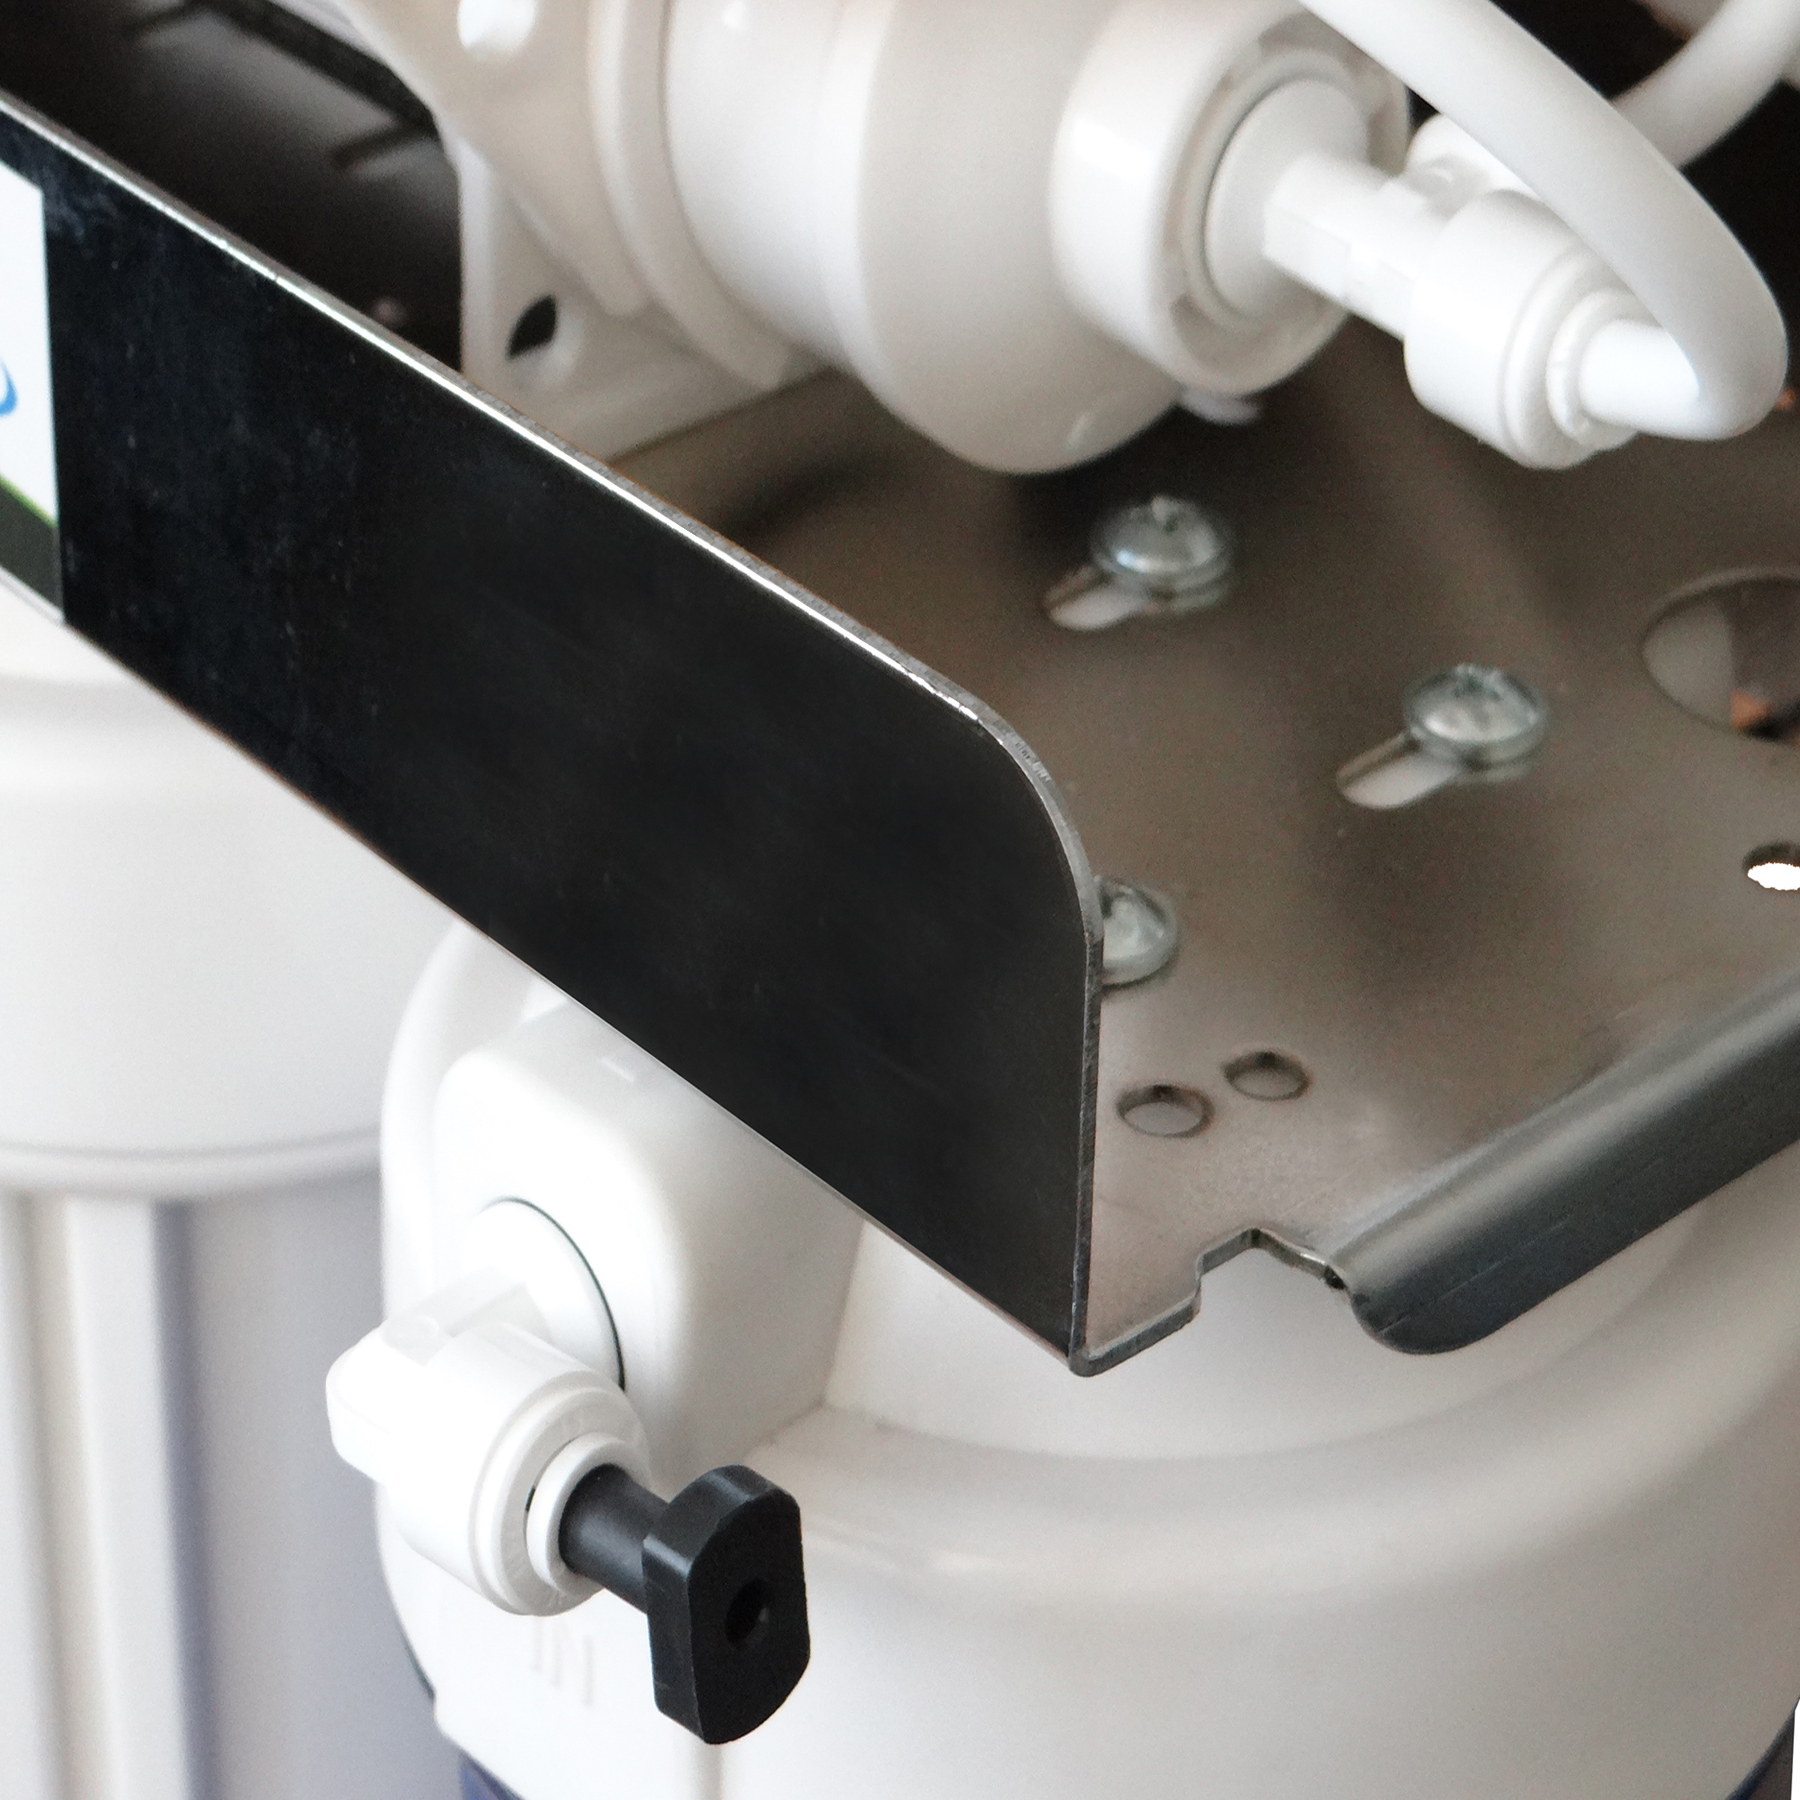 دستگاه تصفیه کننده آب آکوآ اسپرینگ مدل CHROME-FSM9  به همراه فیلتر مجموعه 4 عددی